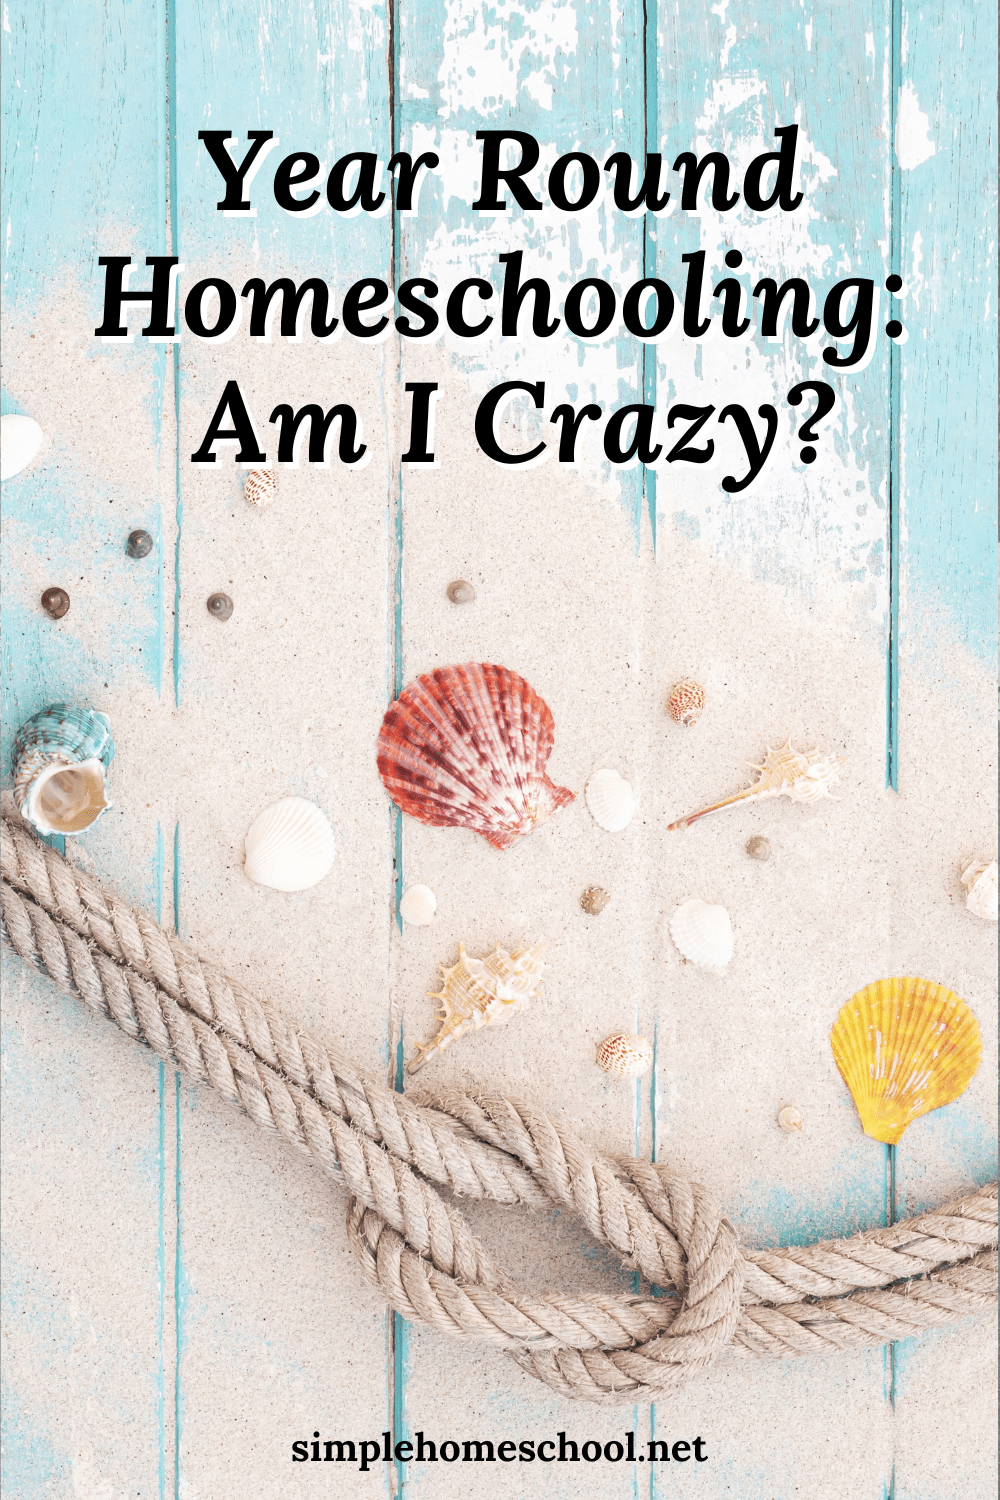  Year Round Homeschooling